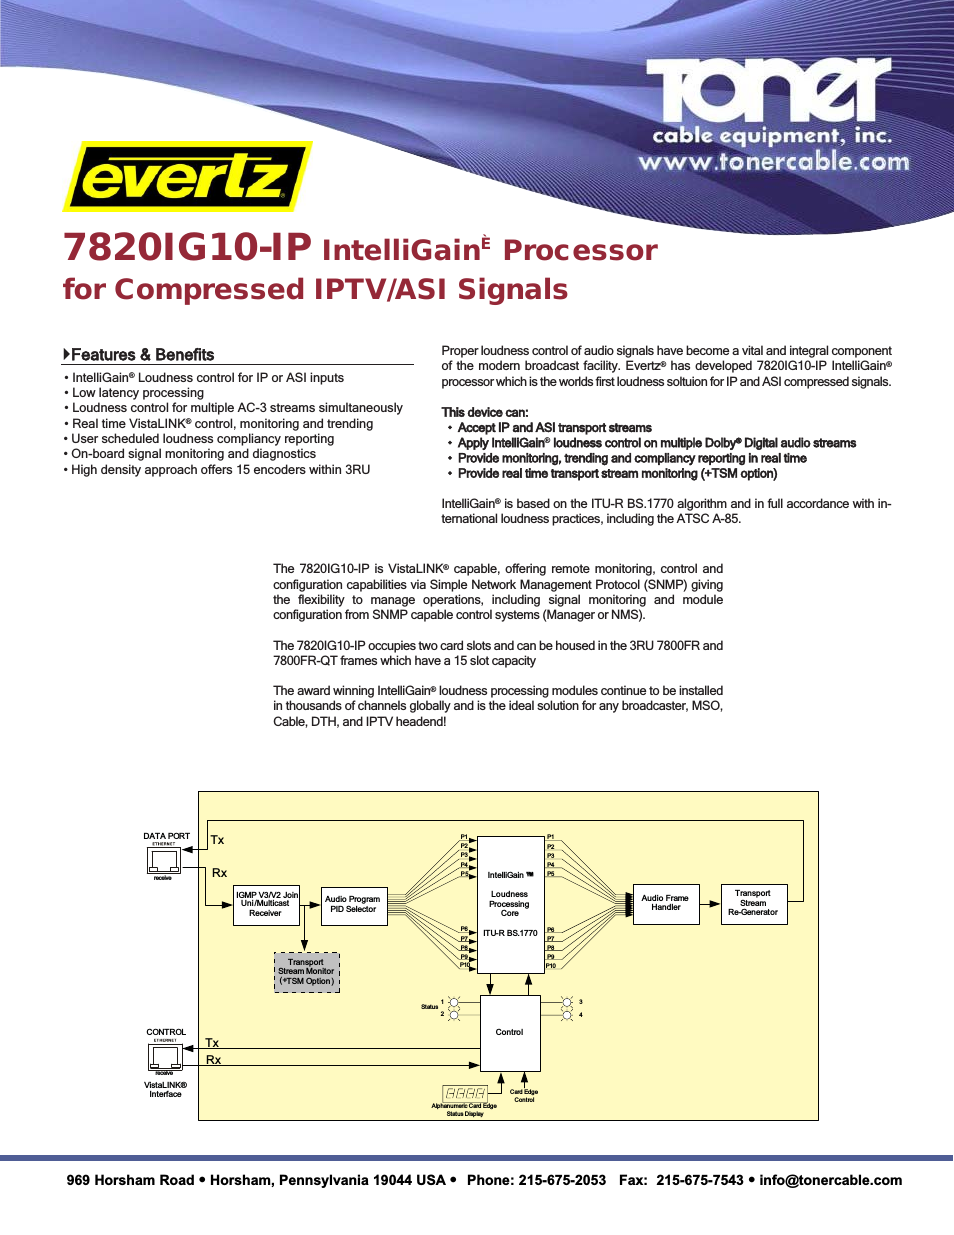 7820IG10-IP IntelliGain Processor for Compressed IPTV-ASI Signals